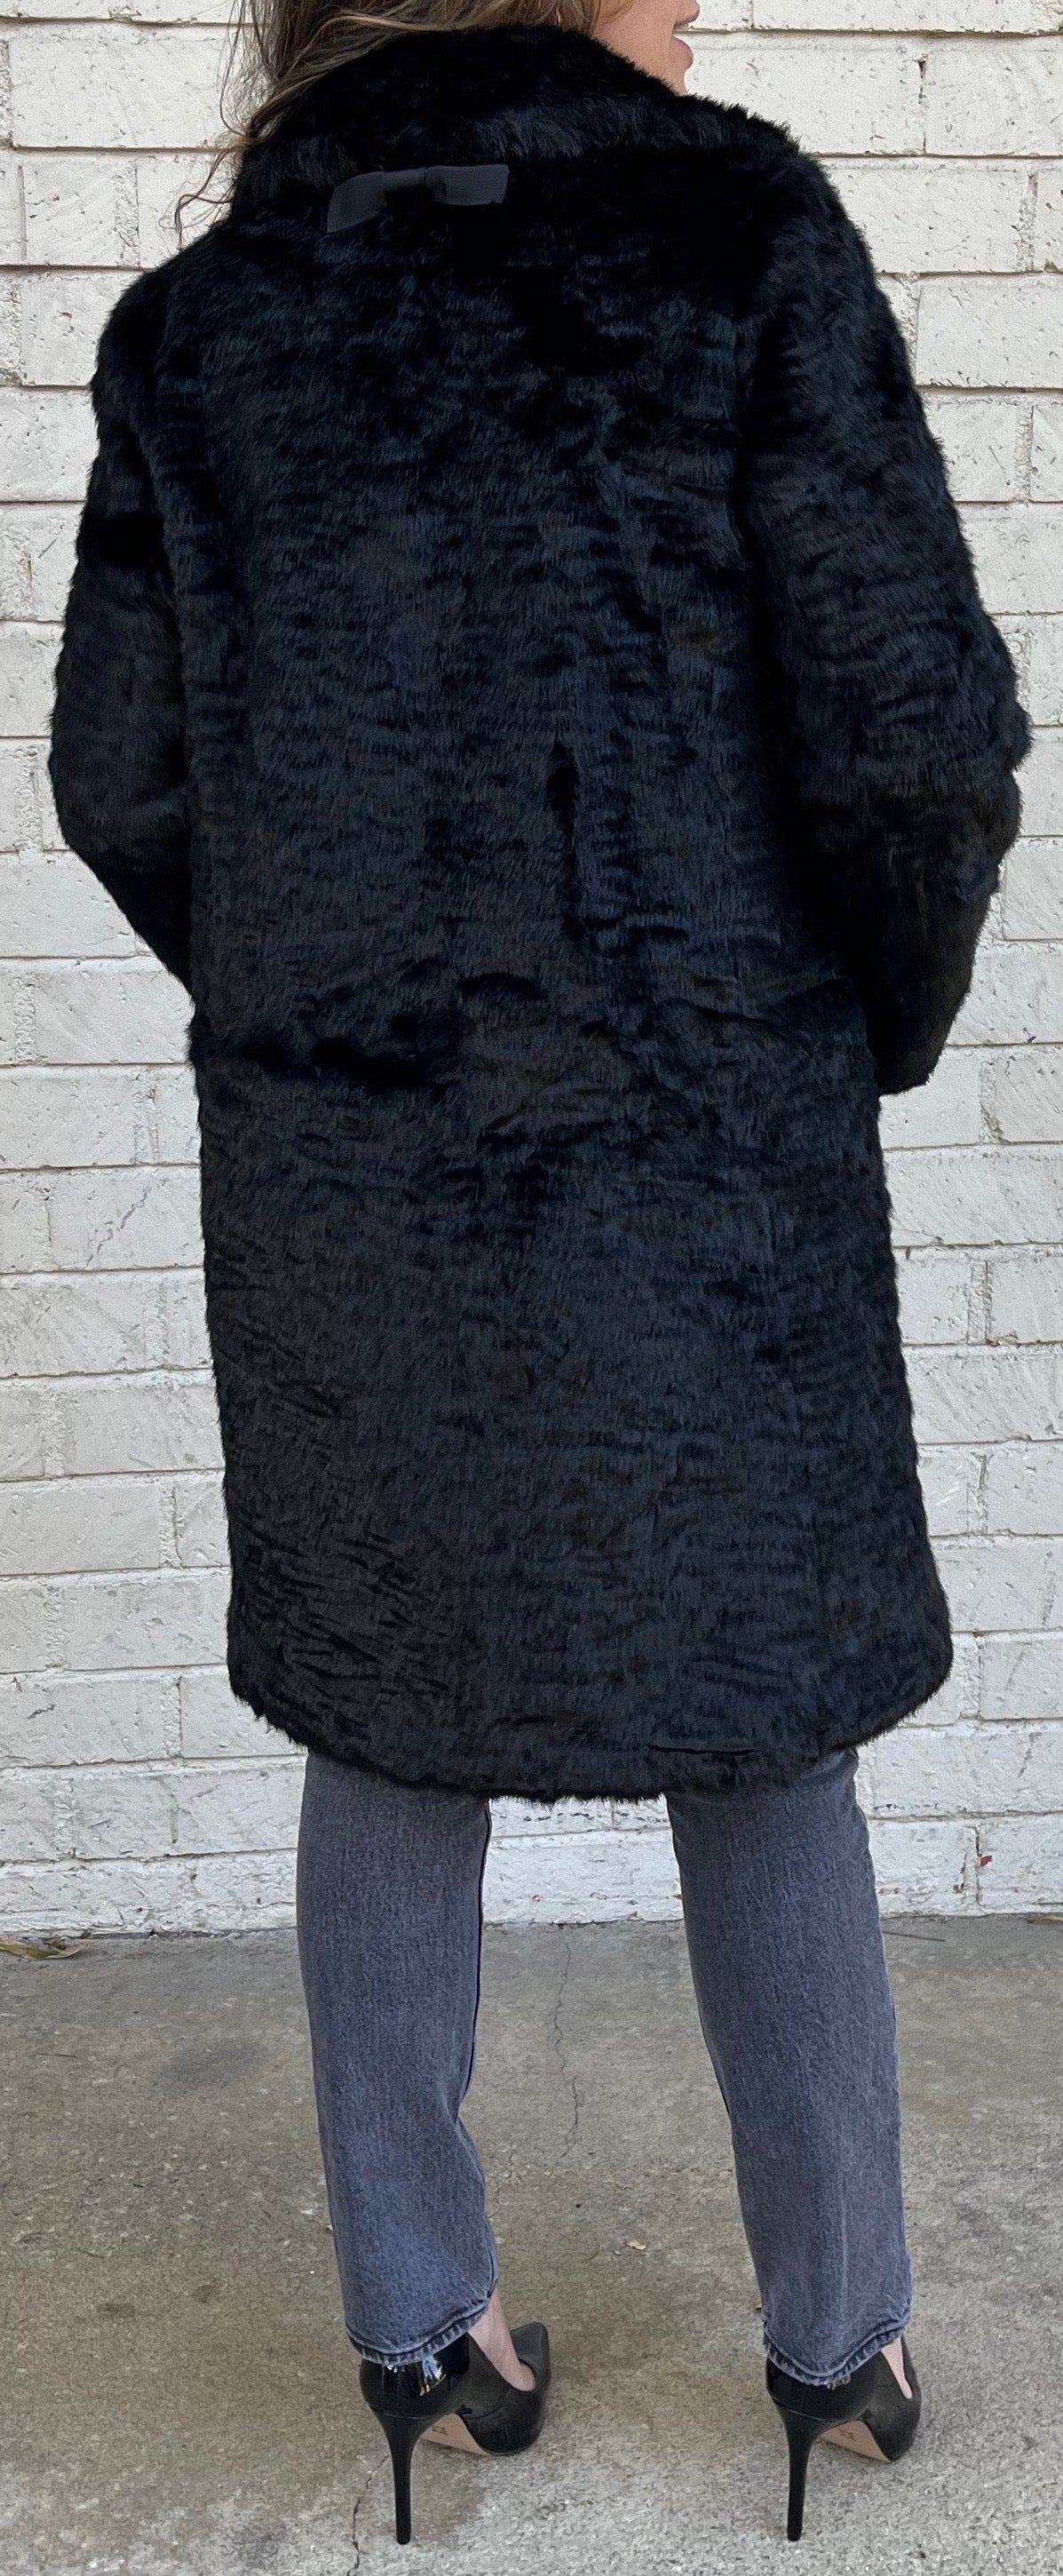 Kate Spade Faux Fur Winter Coat